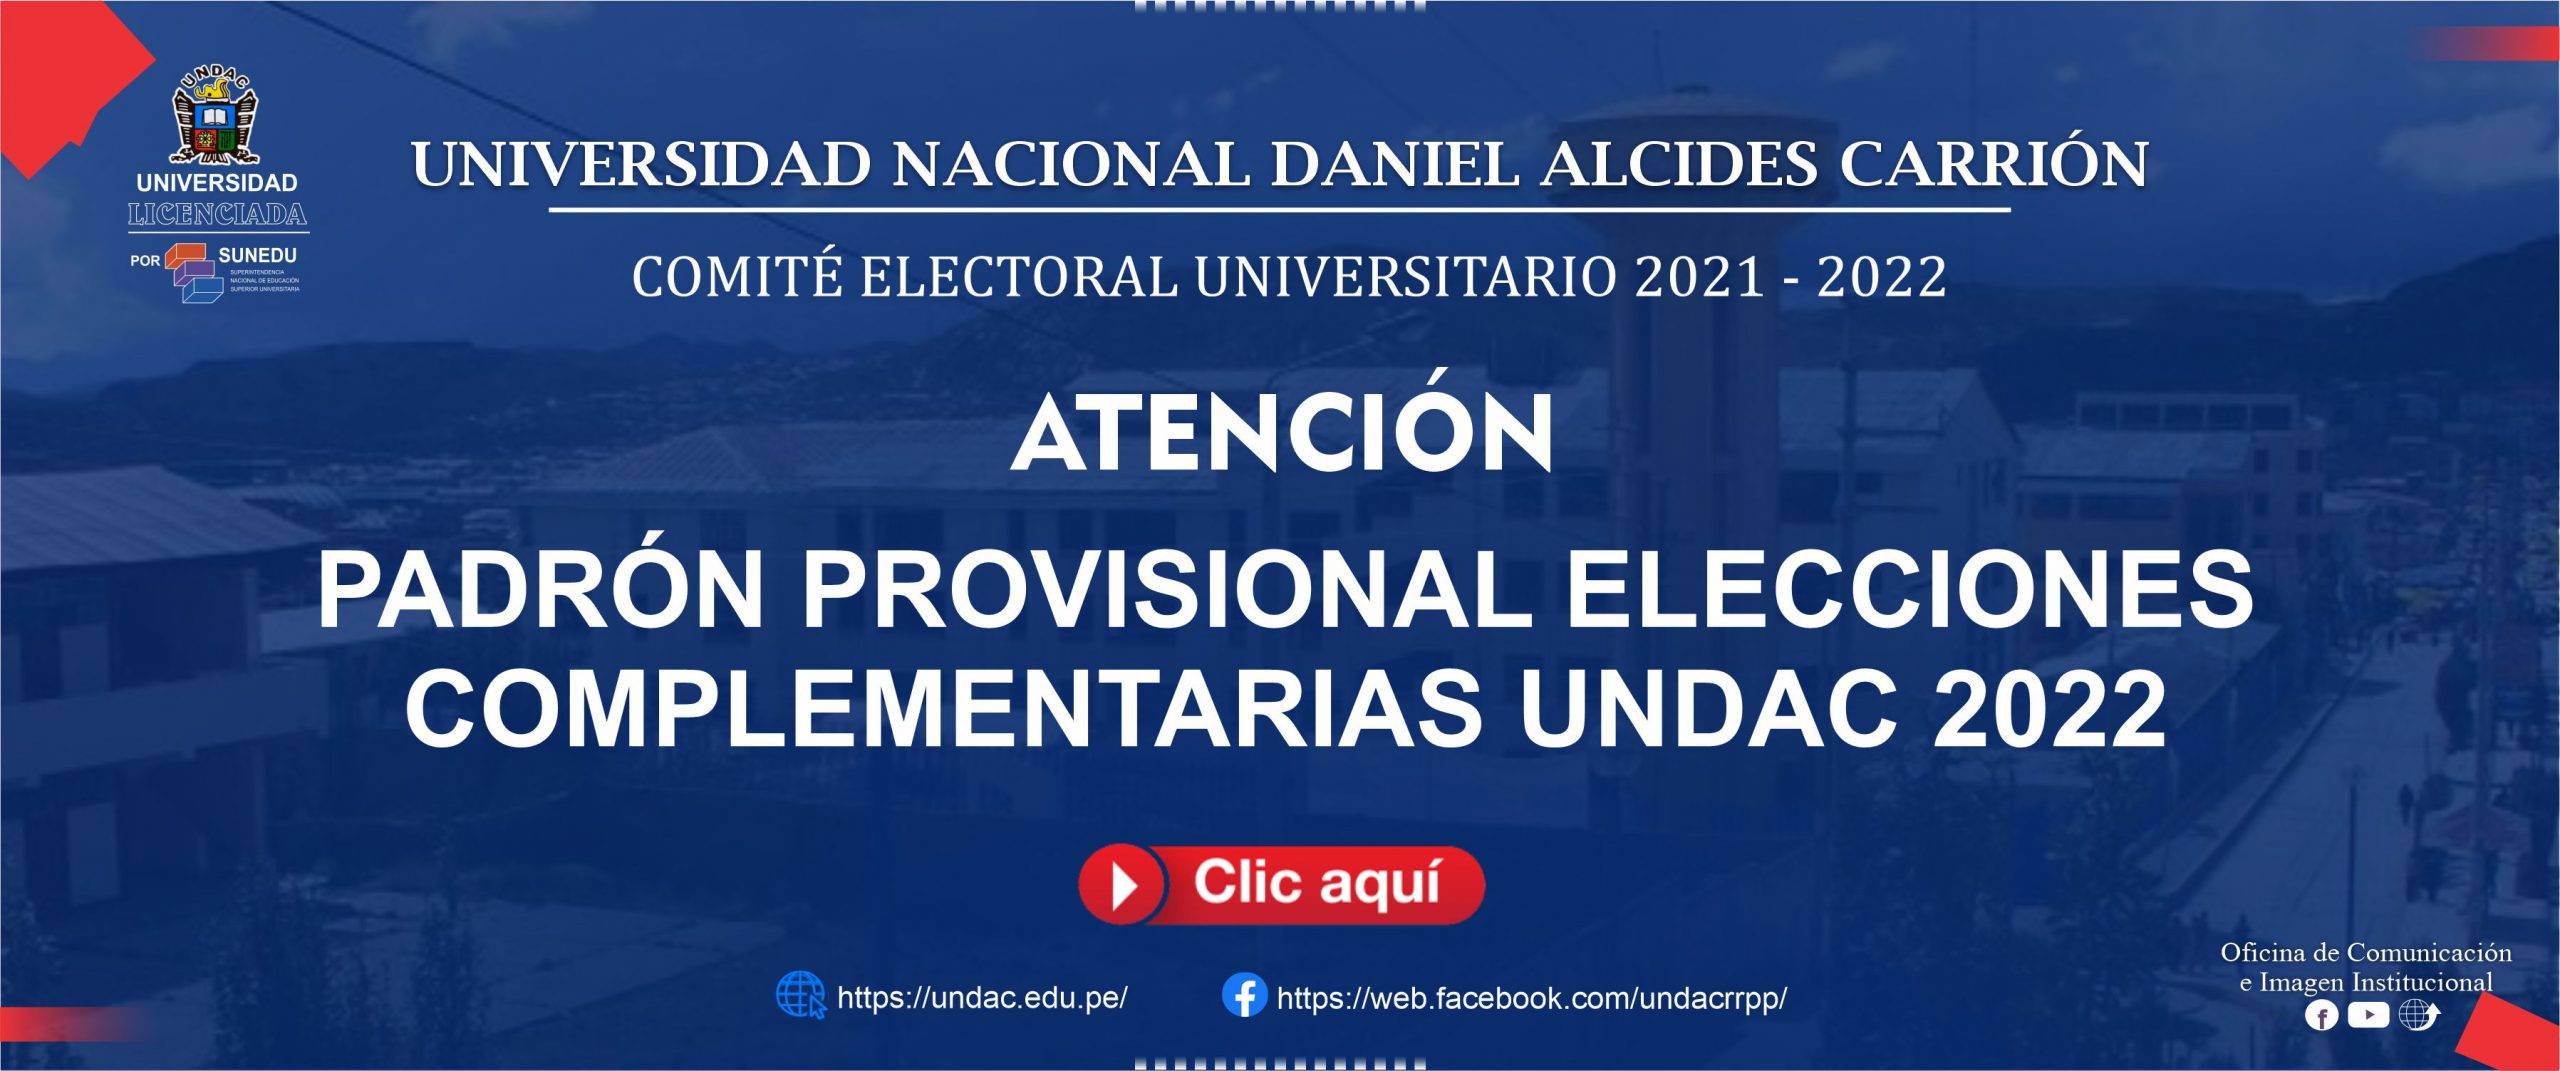 ELECCIONES COMPLEMENTARIAS UNDAC 2022